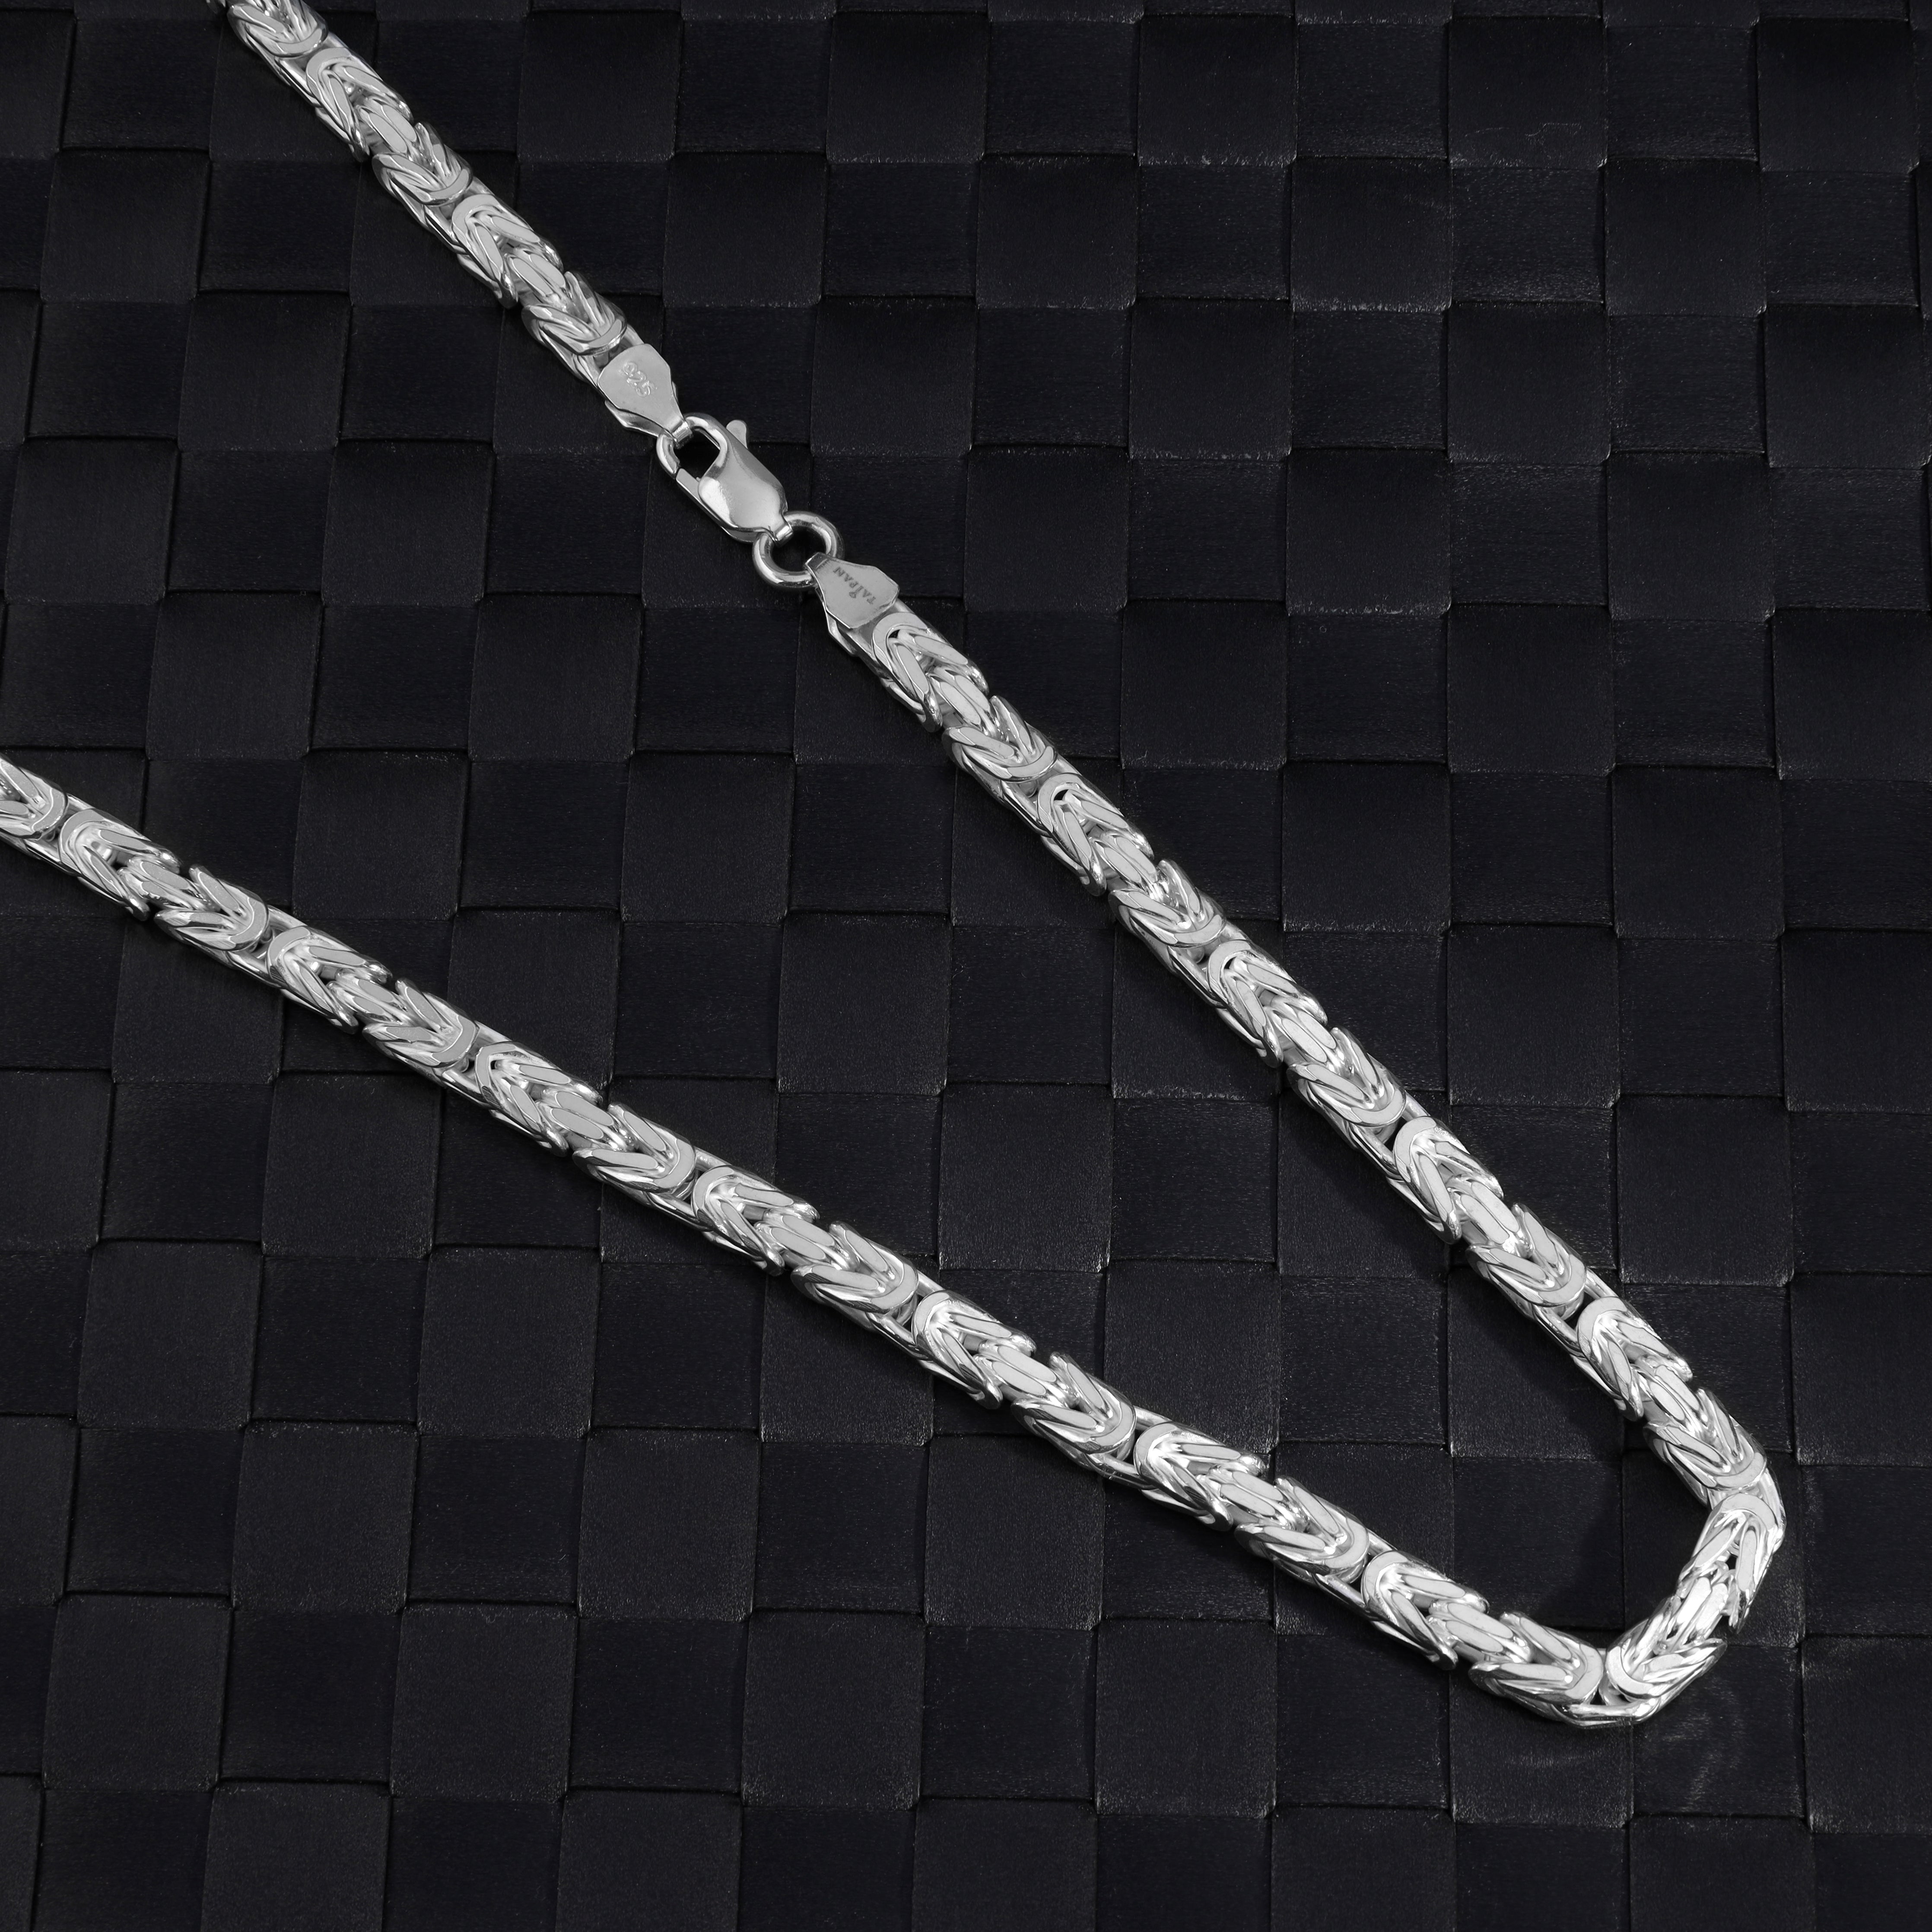 Königskette vierkant 5mm breit 60cm lang 925 Sterling Silber (K943) - Taipan Schmuck